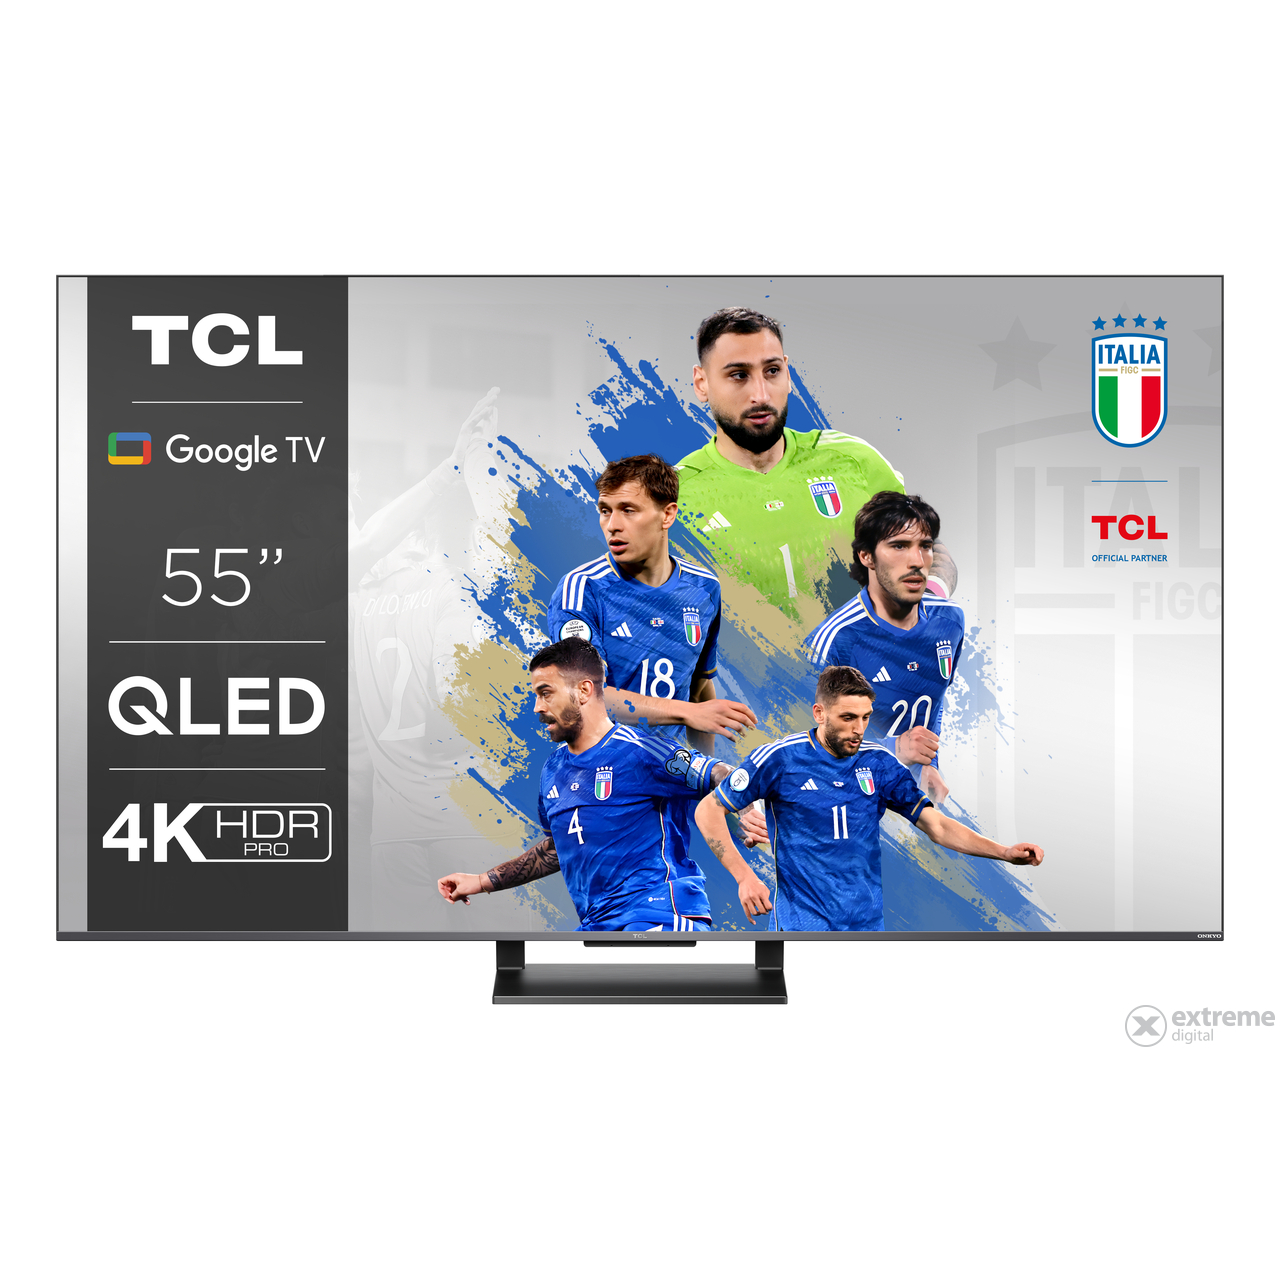 Google pametni televizor Tcl TCL55C735 UHD QLED